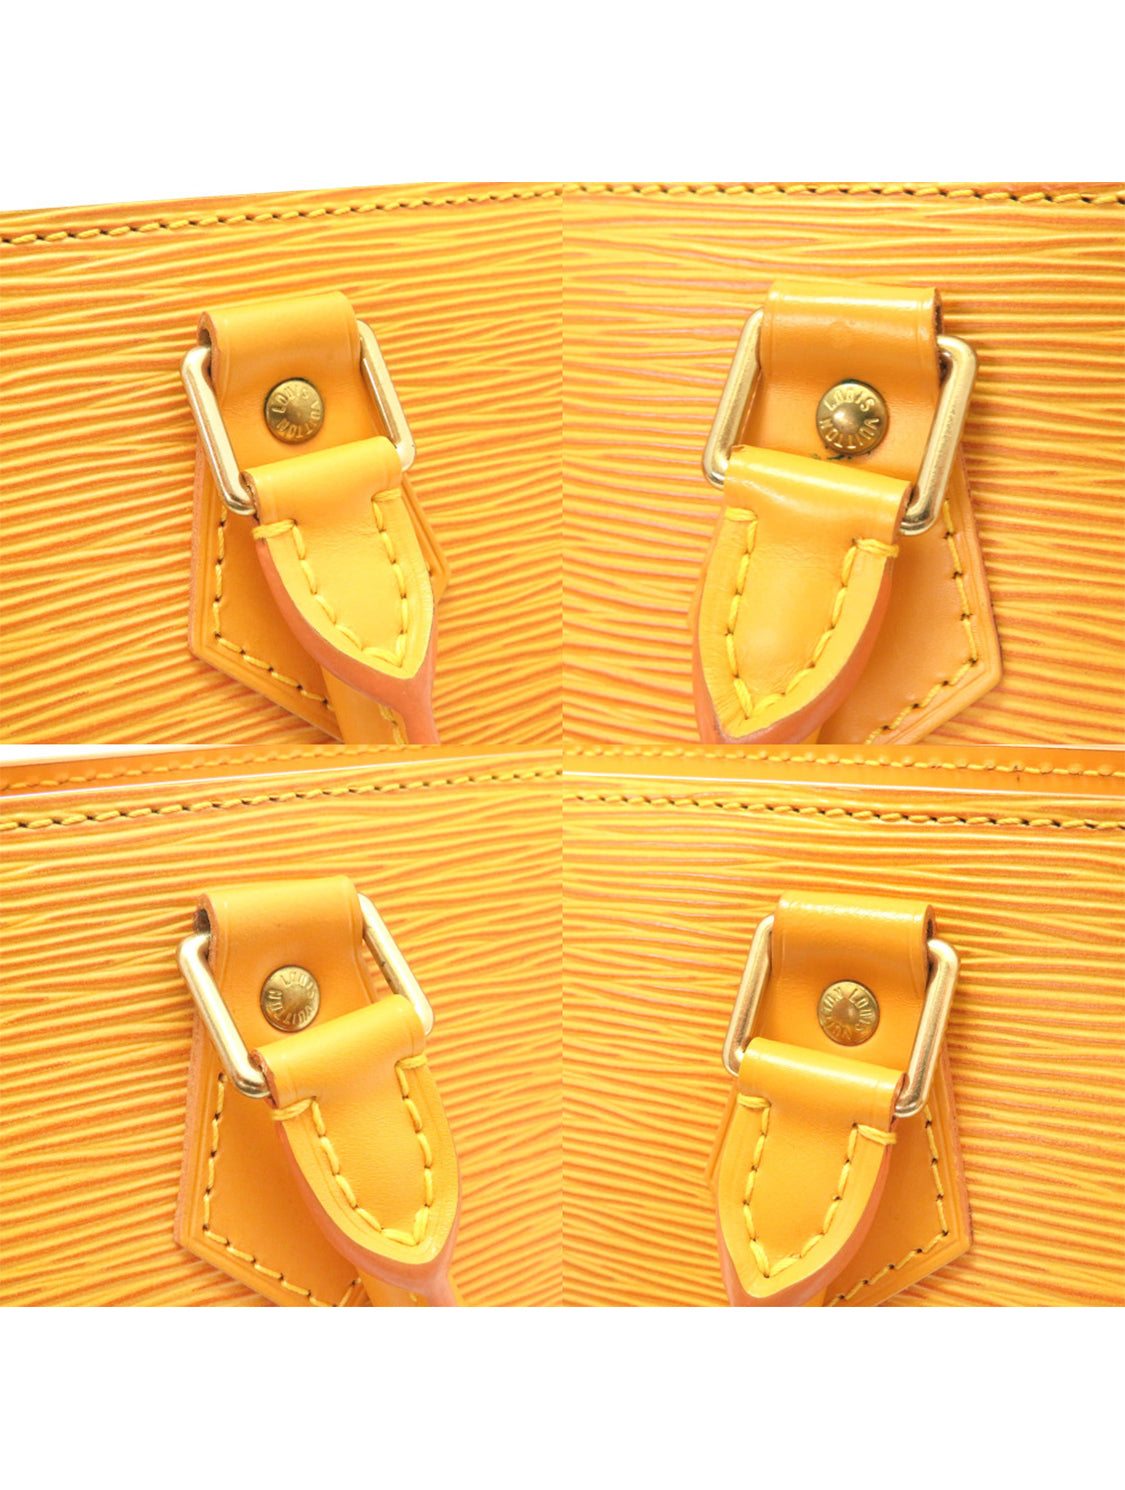 Louis Vuitton 2000s Tassil Yellow Epi Leather Sac Triangle Handbag